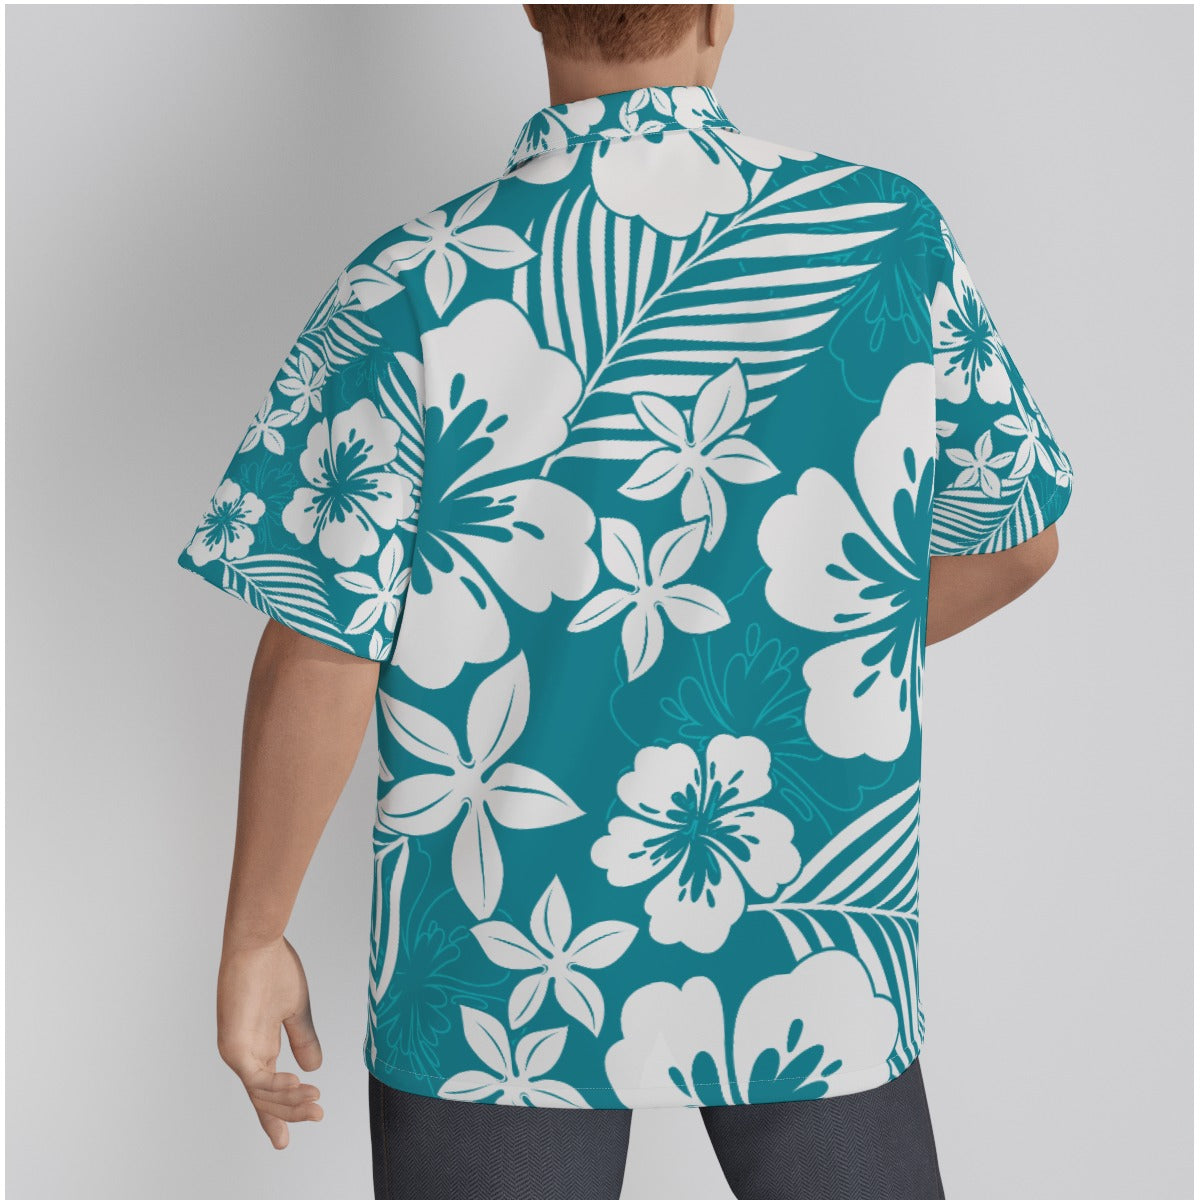 Men's Classic Hawaiian Shirt, Men's Aloha Shirt